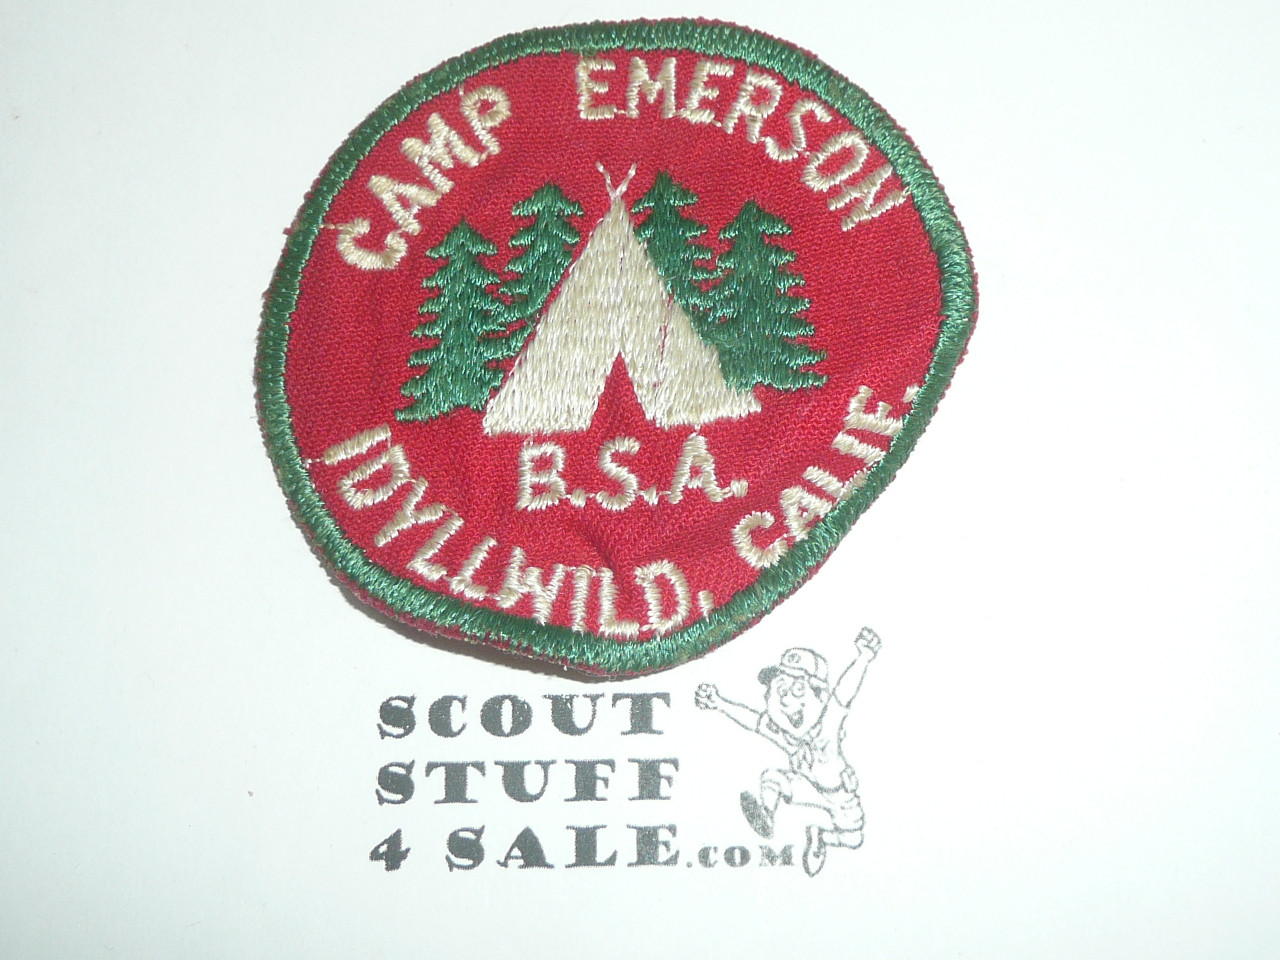 Camp Emerson c/e Patch, California Inland Empire Council, unused